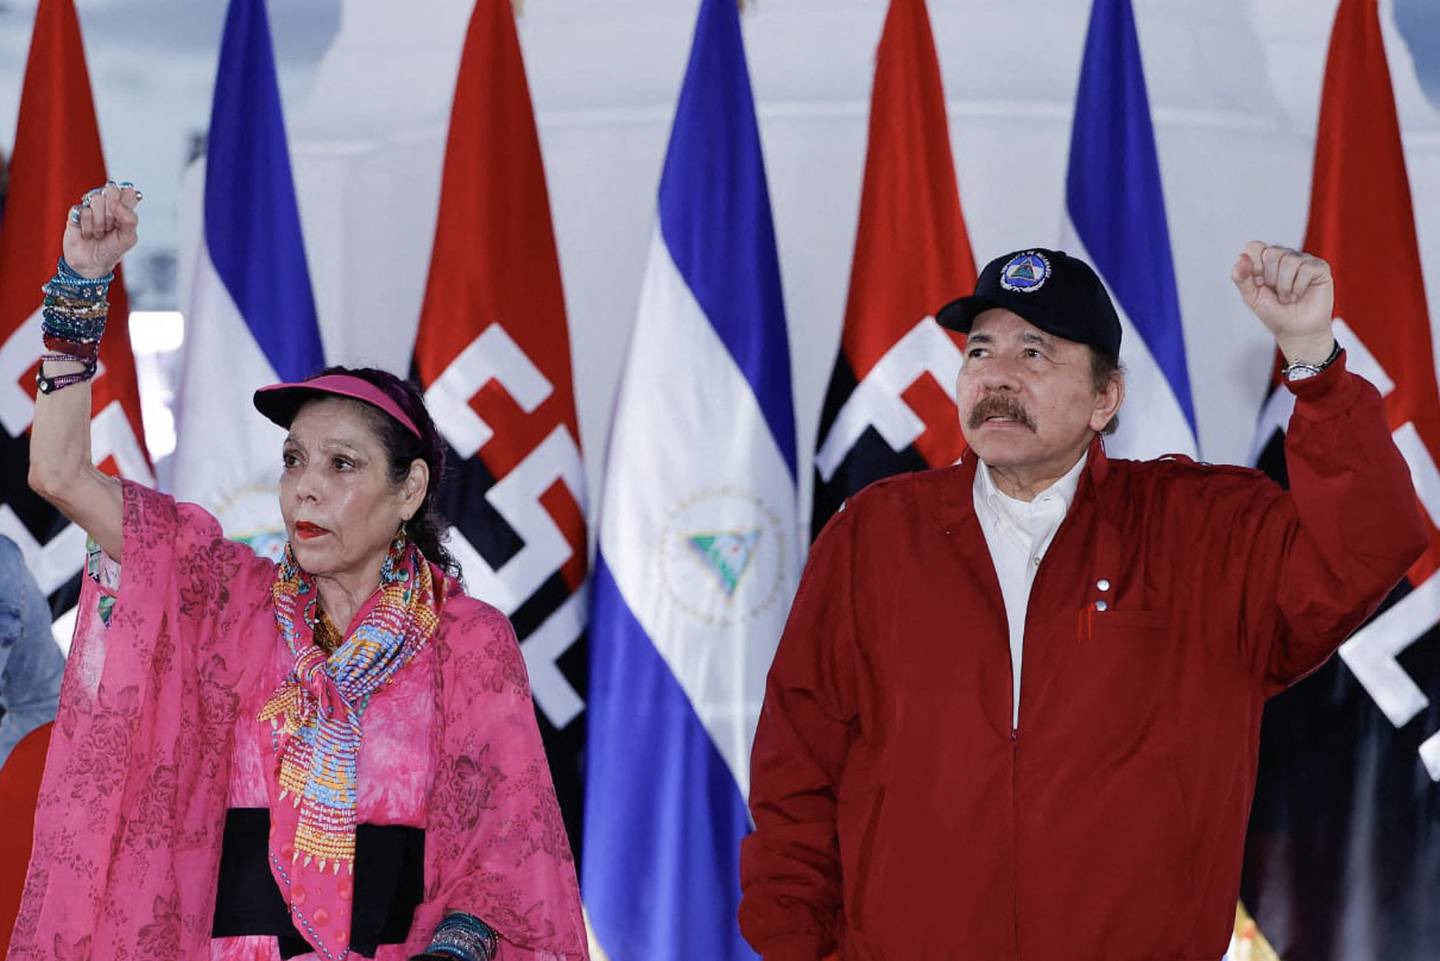 Daniel Ortega, quien gobierna en Nicaragua, junto con su esposa Rosario Murillo.